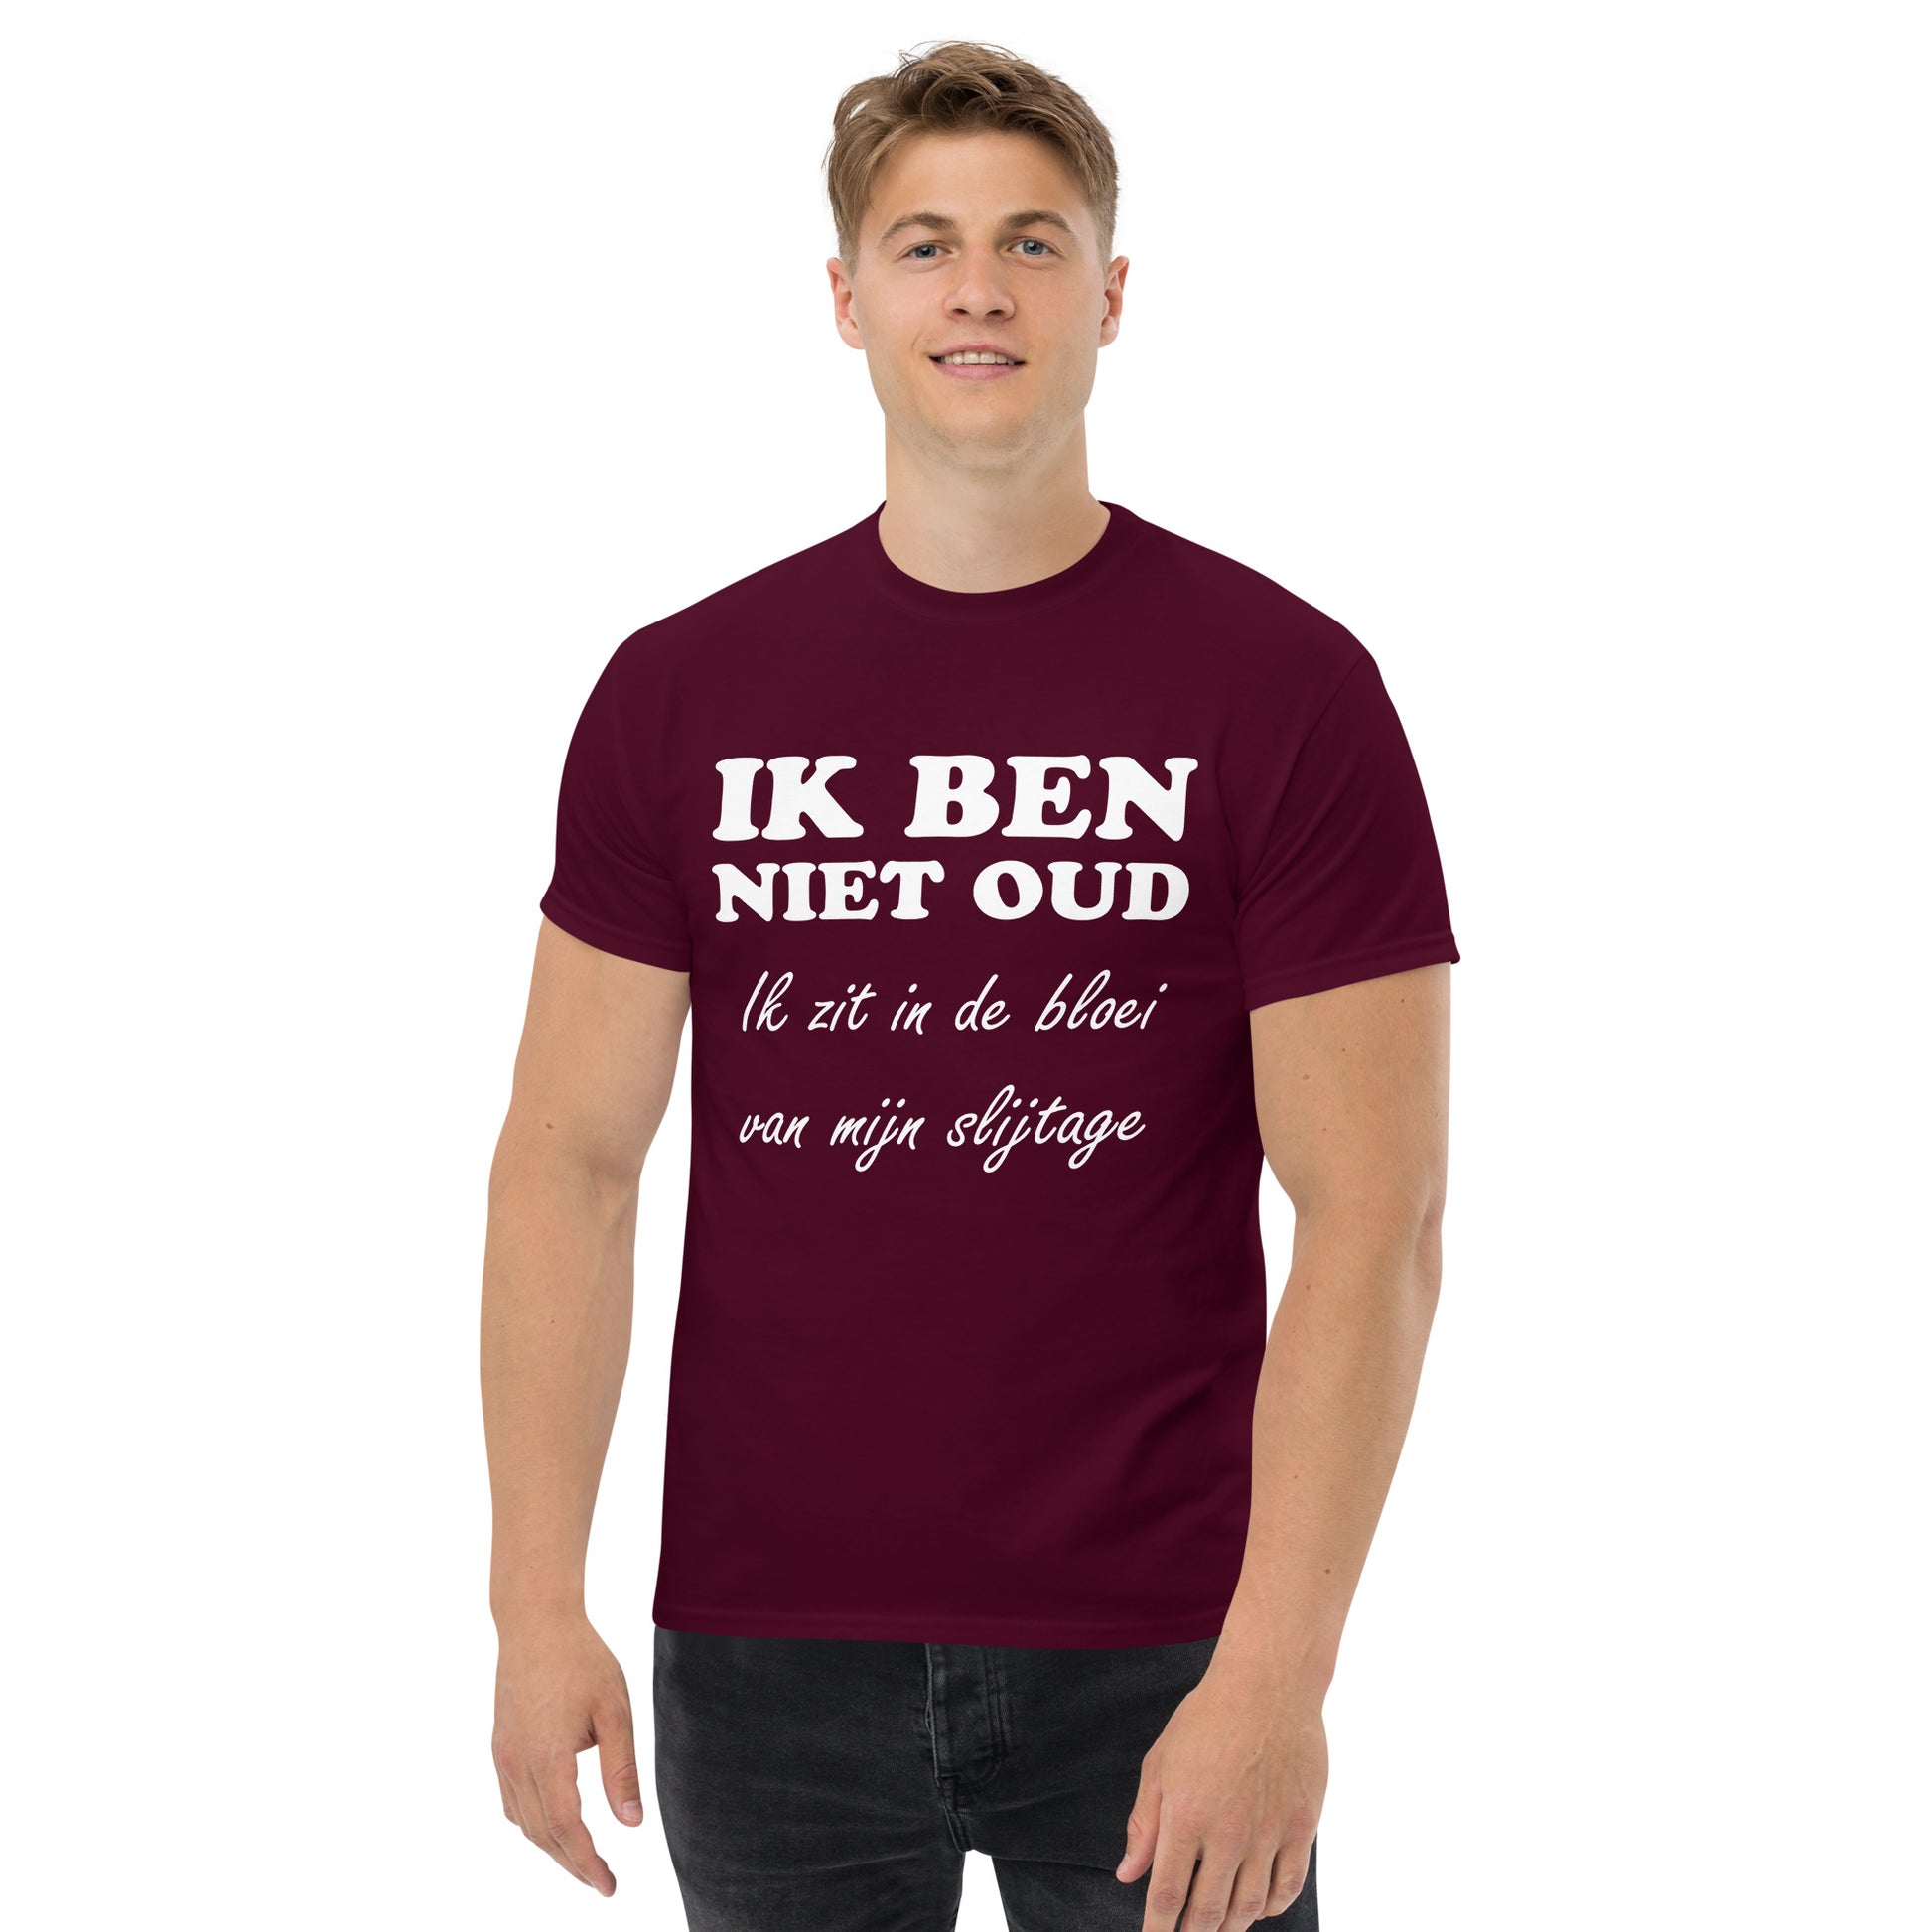 Maroon T-shirt with the text "IK BEN NIET OUD ik zit in de bloei van mijn slijtage"